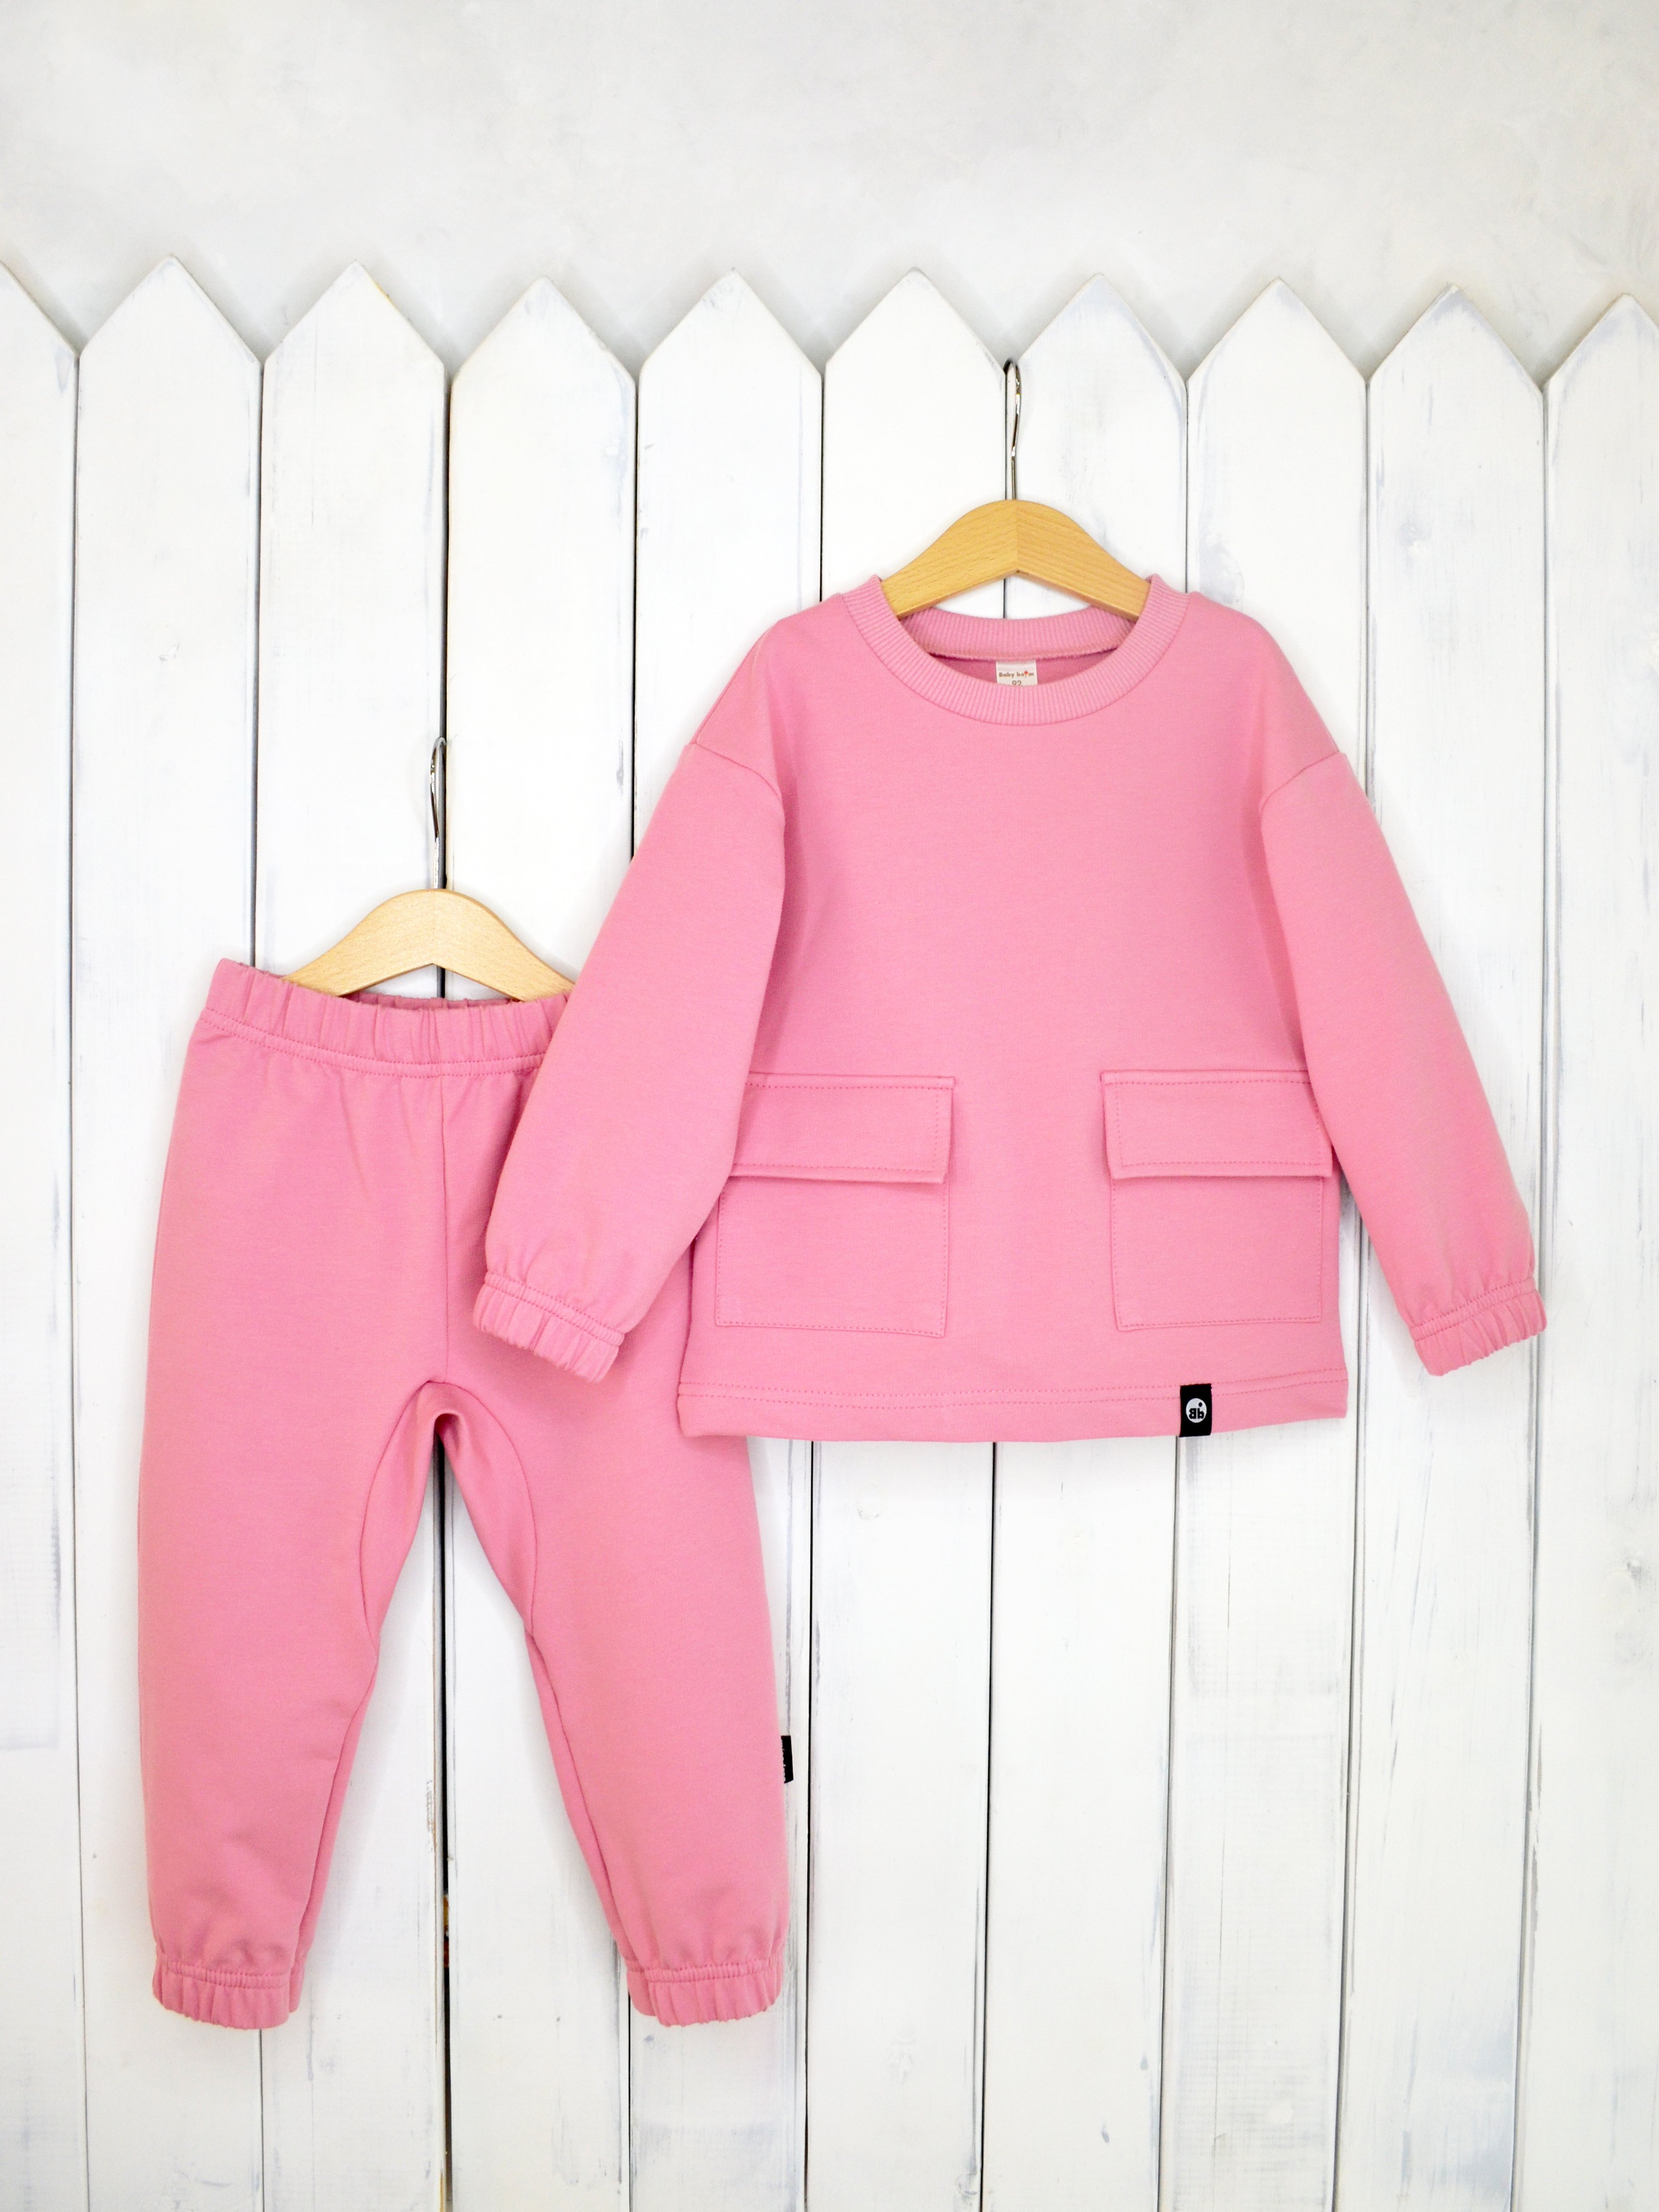 КД326/3-Ф Комплект детский джемпер+брюки цвет: розовый зефир р.116 Бэби Бум - Нижнекамск 